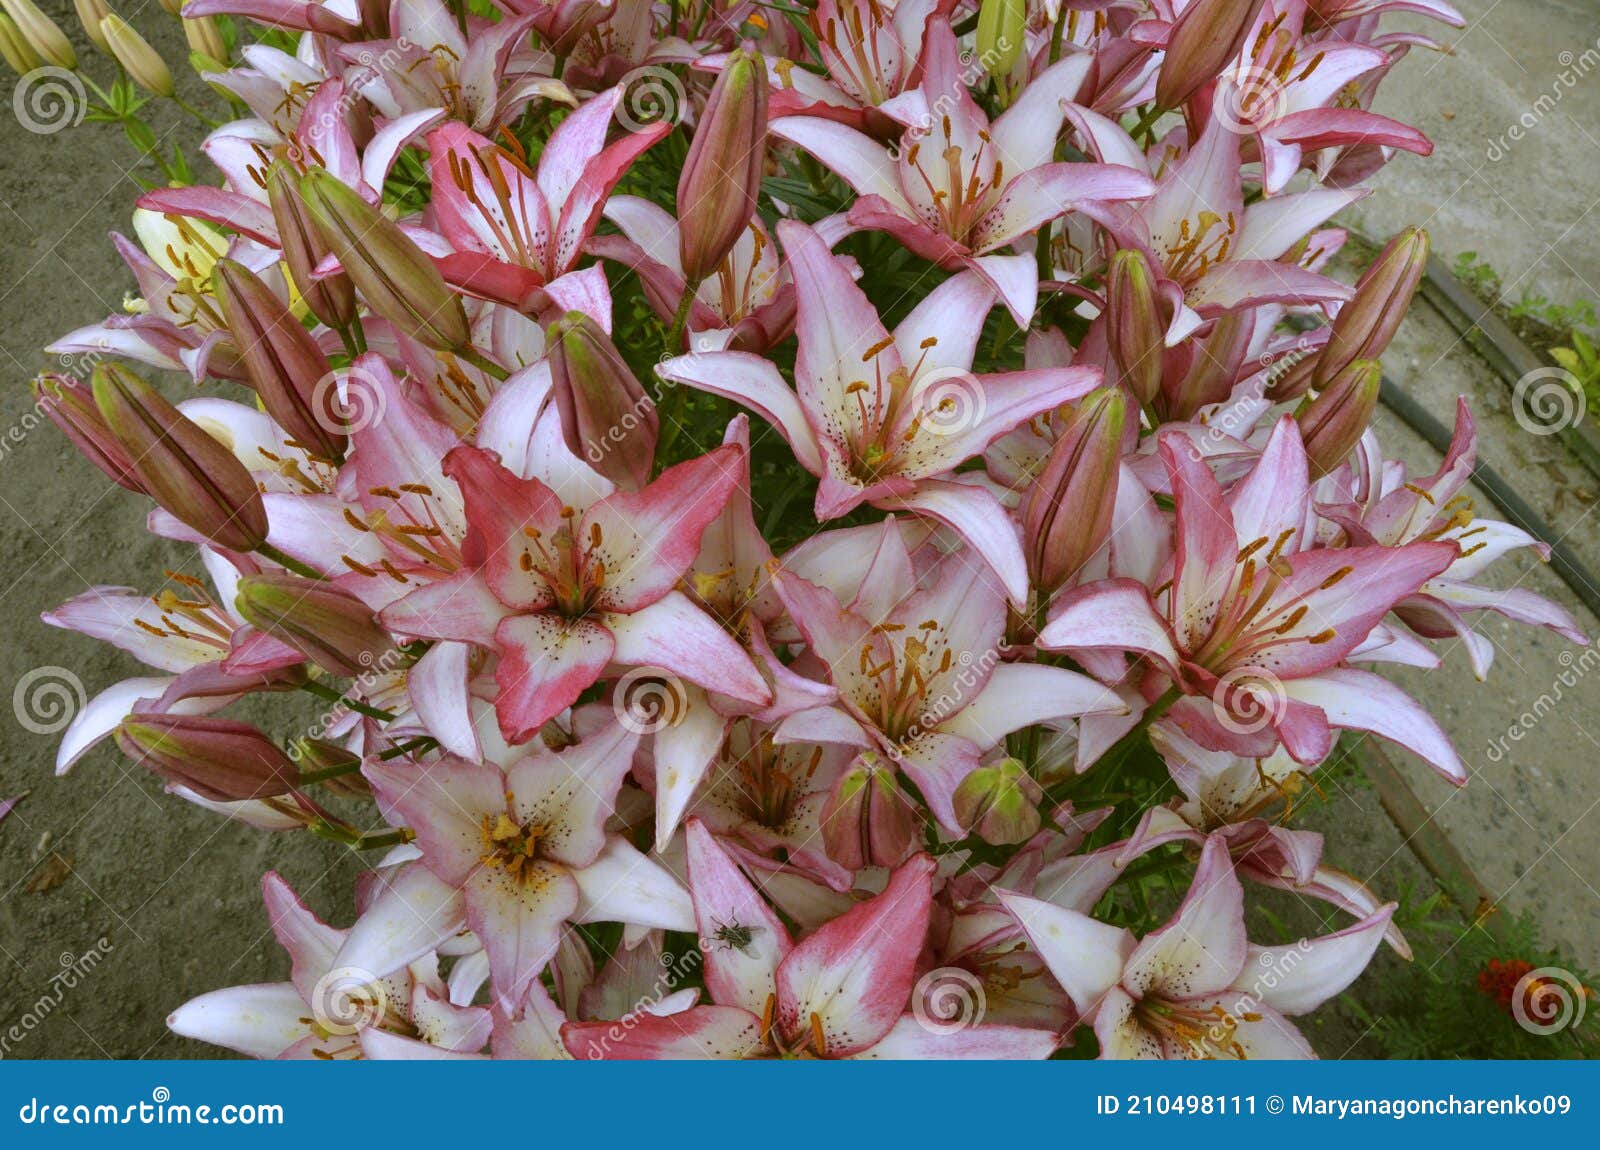 Azucenas Rosas Y Blancas En El Jardín En Rusia En La Región De Tver Imagen  de archivo - Imagen de indiferente, imposible: 210498111